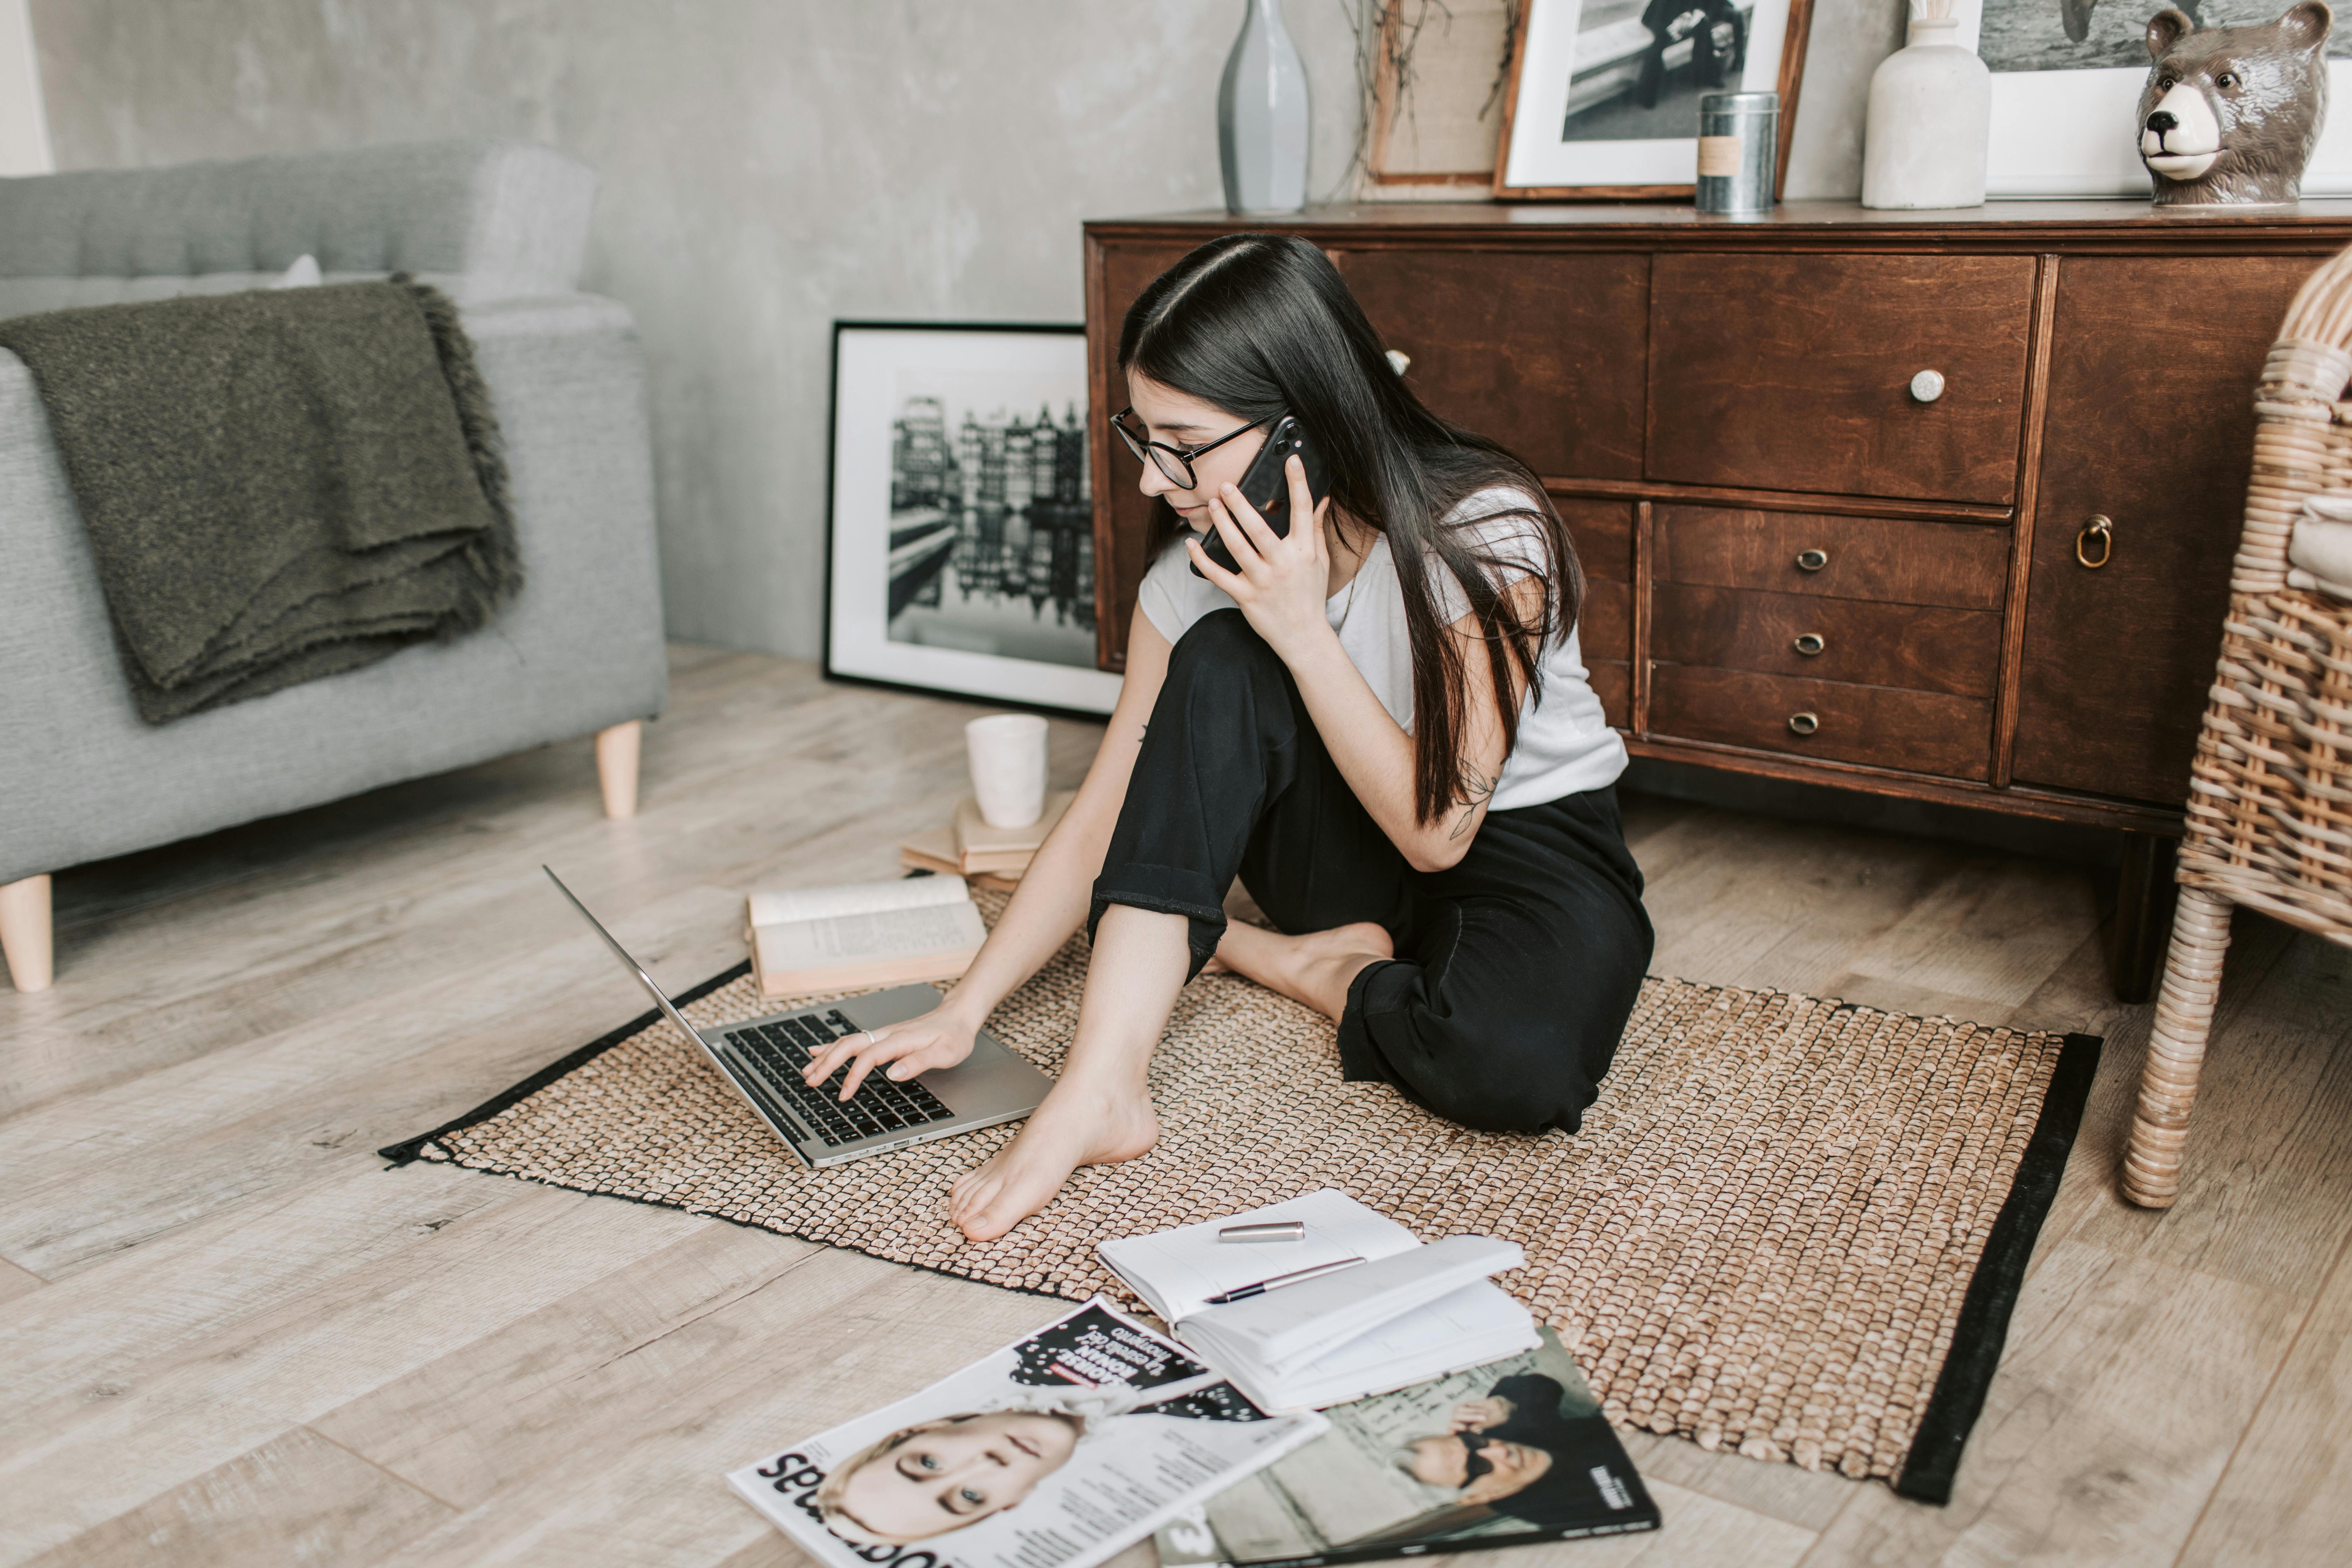 Une jeune fille au téléphone avec un ordinateur portable, des livres et des magazines autour d'elle | Source : Pexels